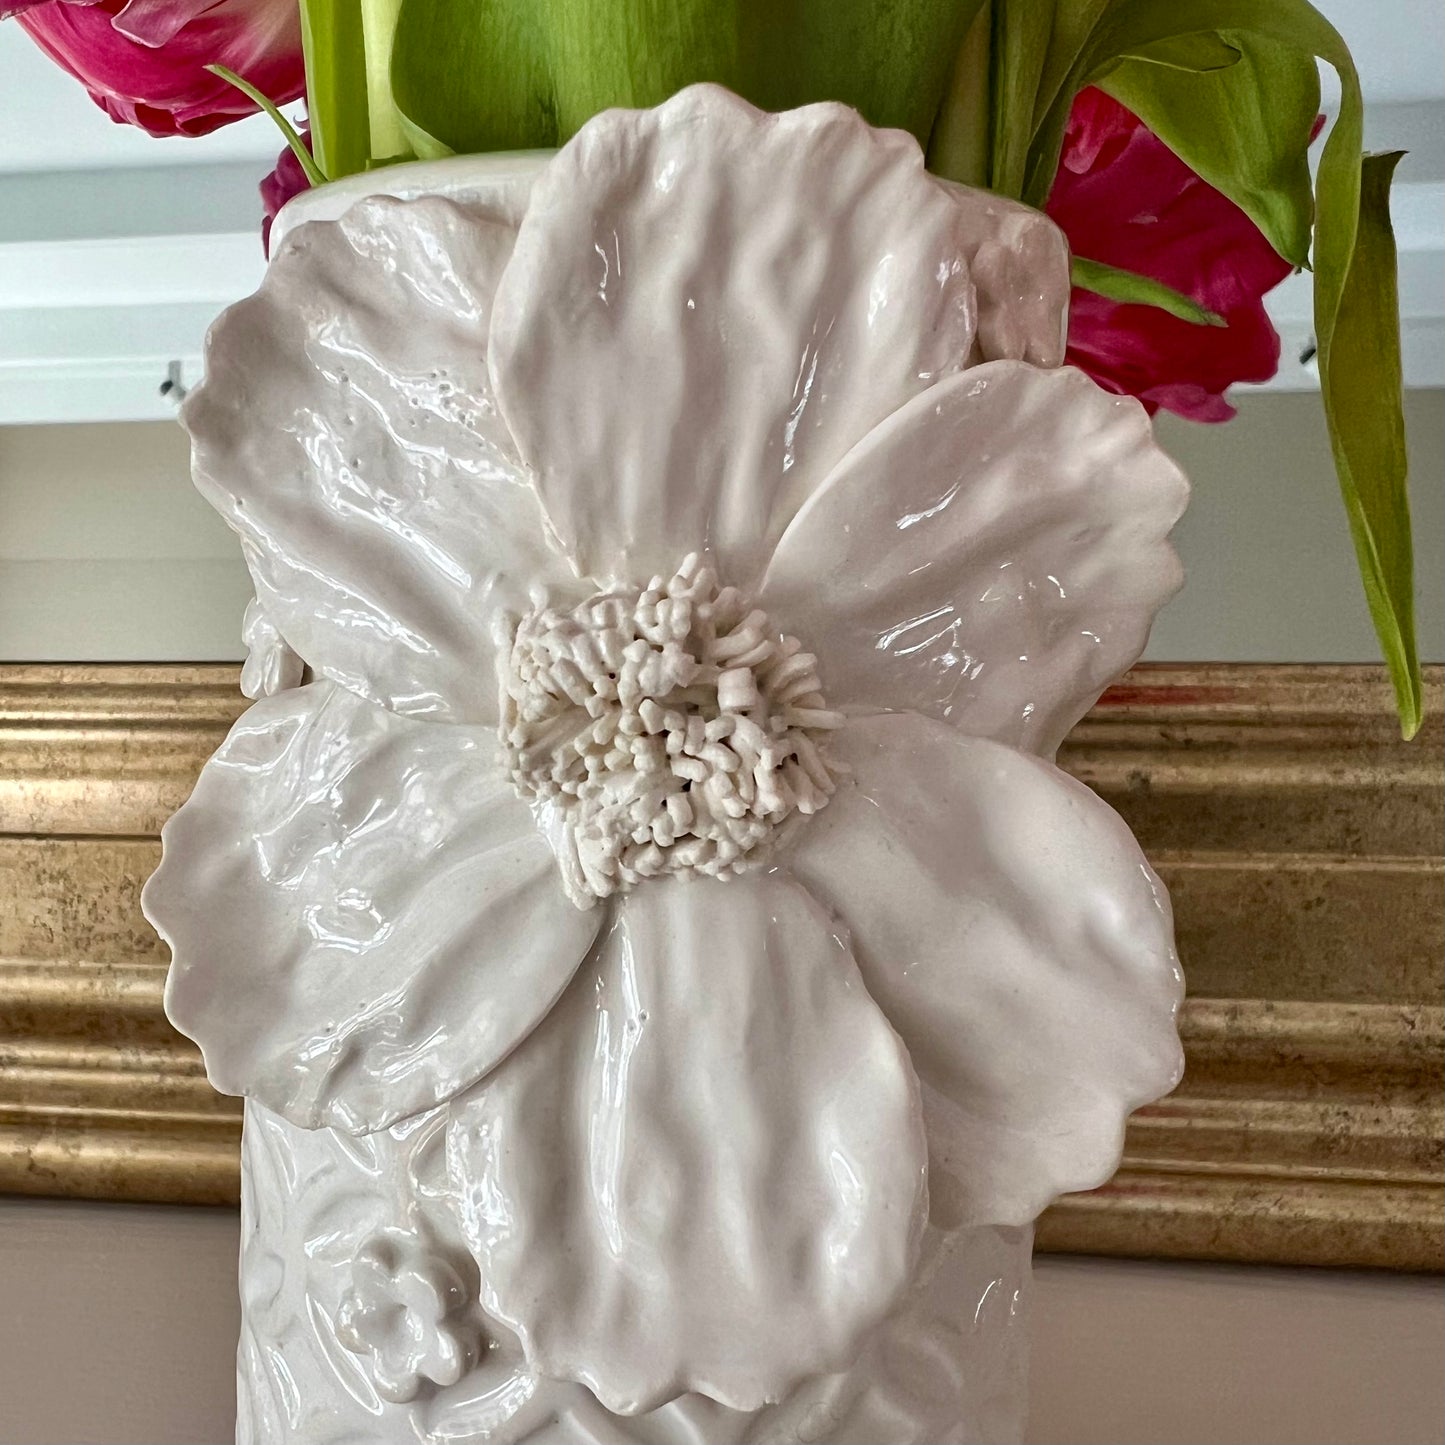 Medium White Flower Vase